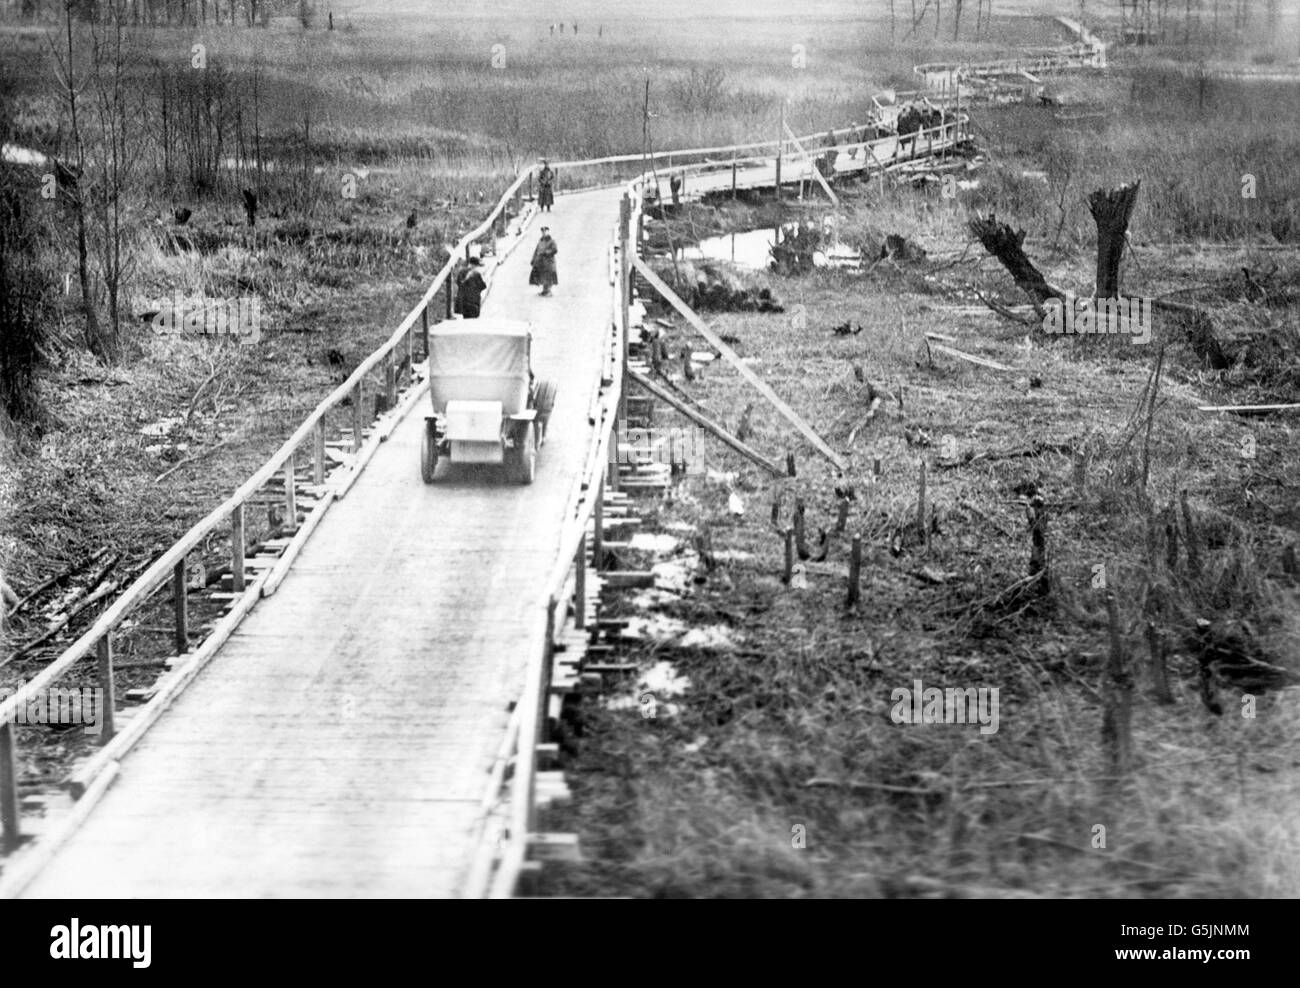 Eine 500 m lange Brücke in Nordfrankreich. 600 Soldaten brauchten fünf Tage, um die in Deutschland gebaute Struktur zu errichten. Stockfoto